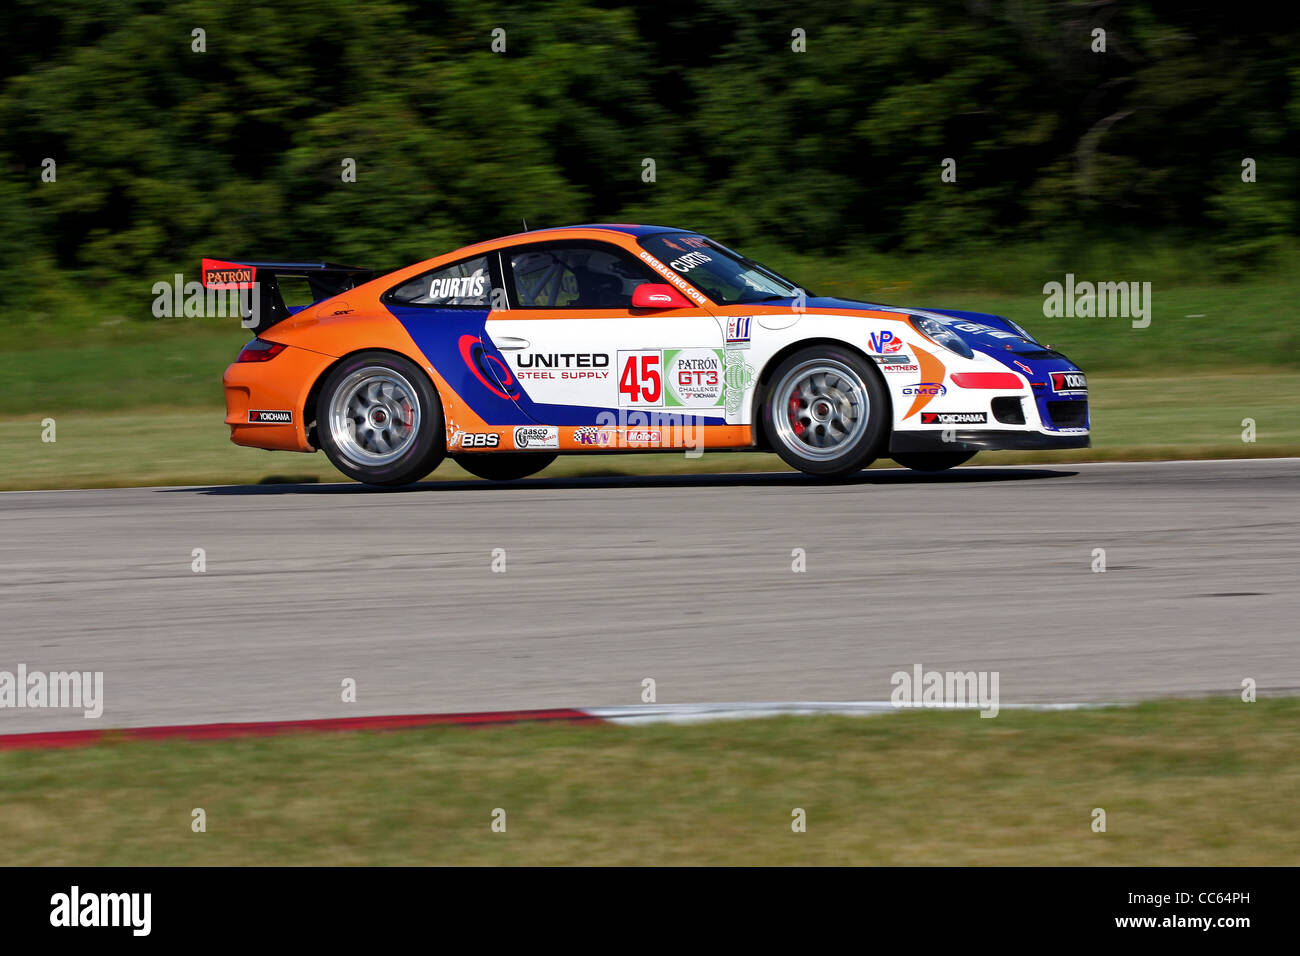 Porsche GT3 en voie crossover Autobahn Country Club Race Track Banque D'Images